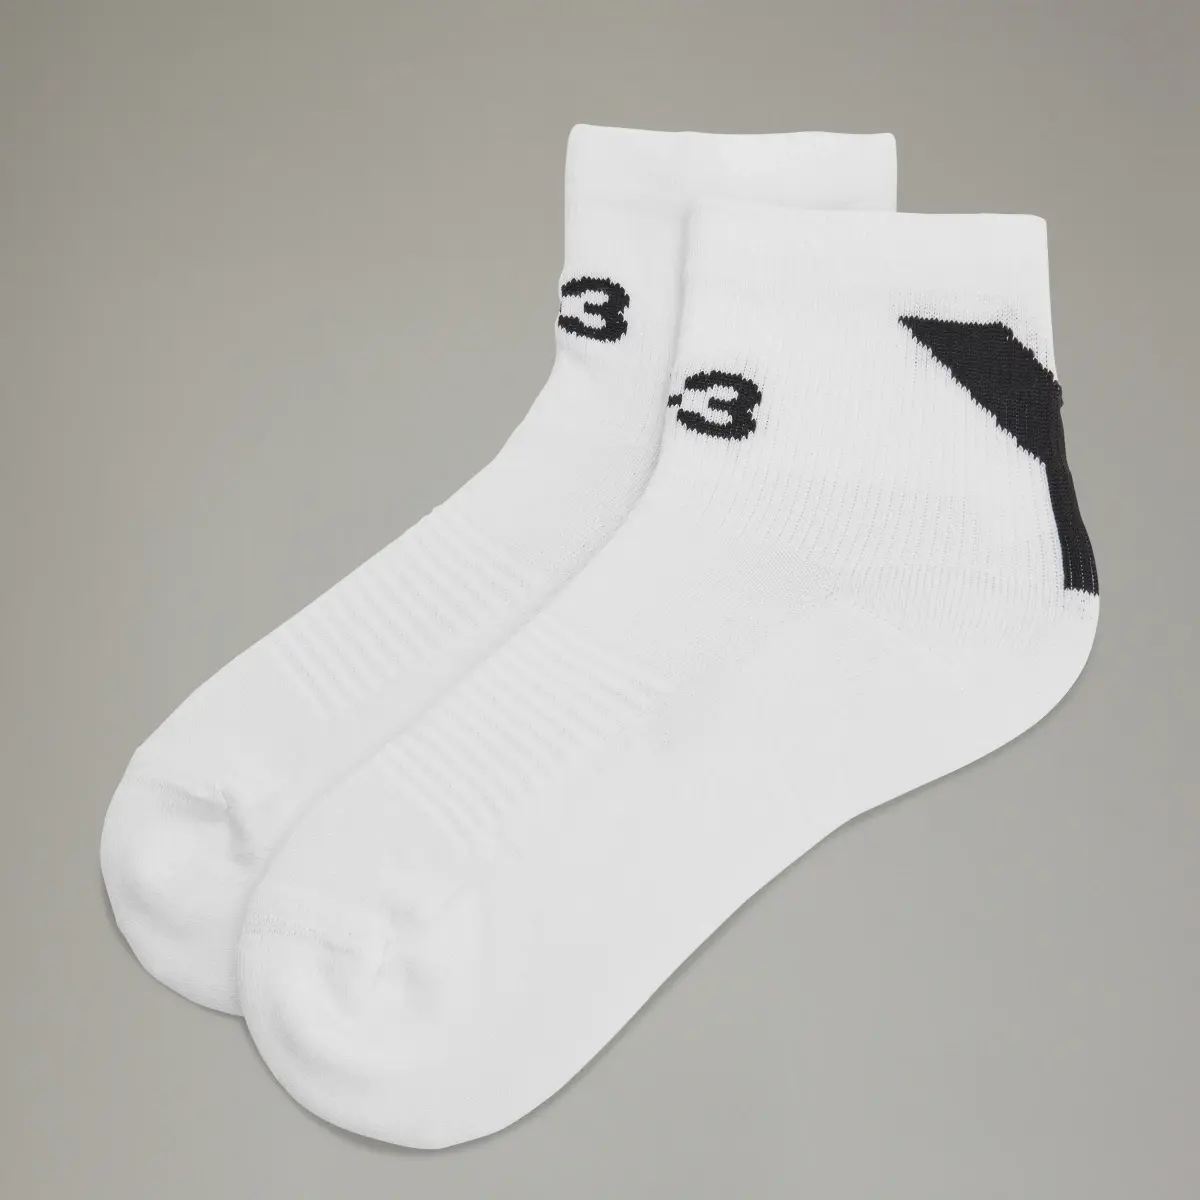 Adidas Y-3 Lo Socks. 1